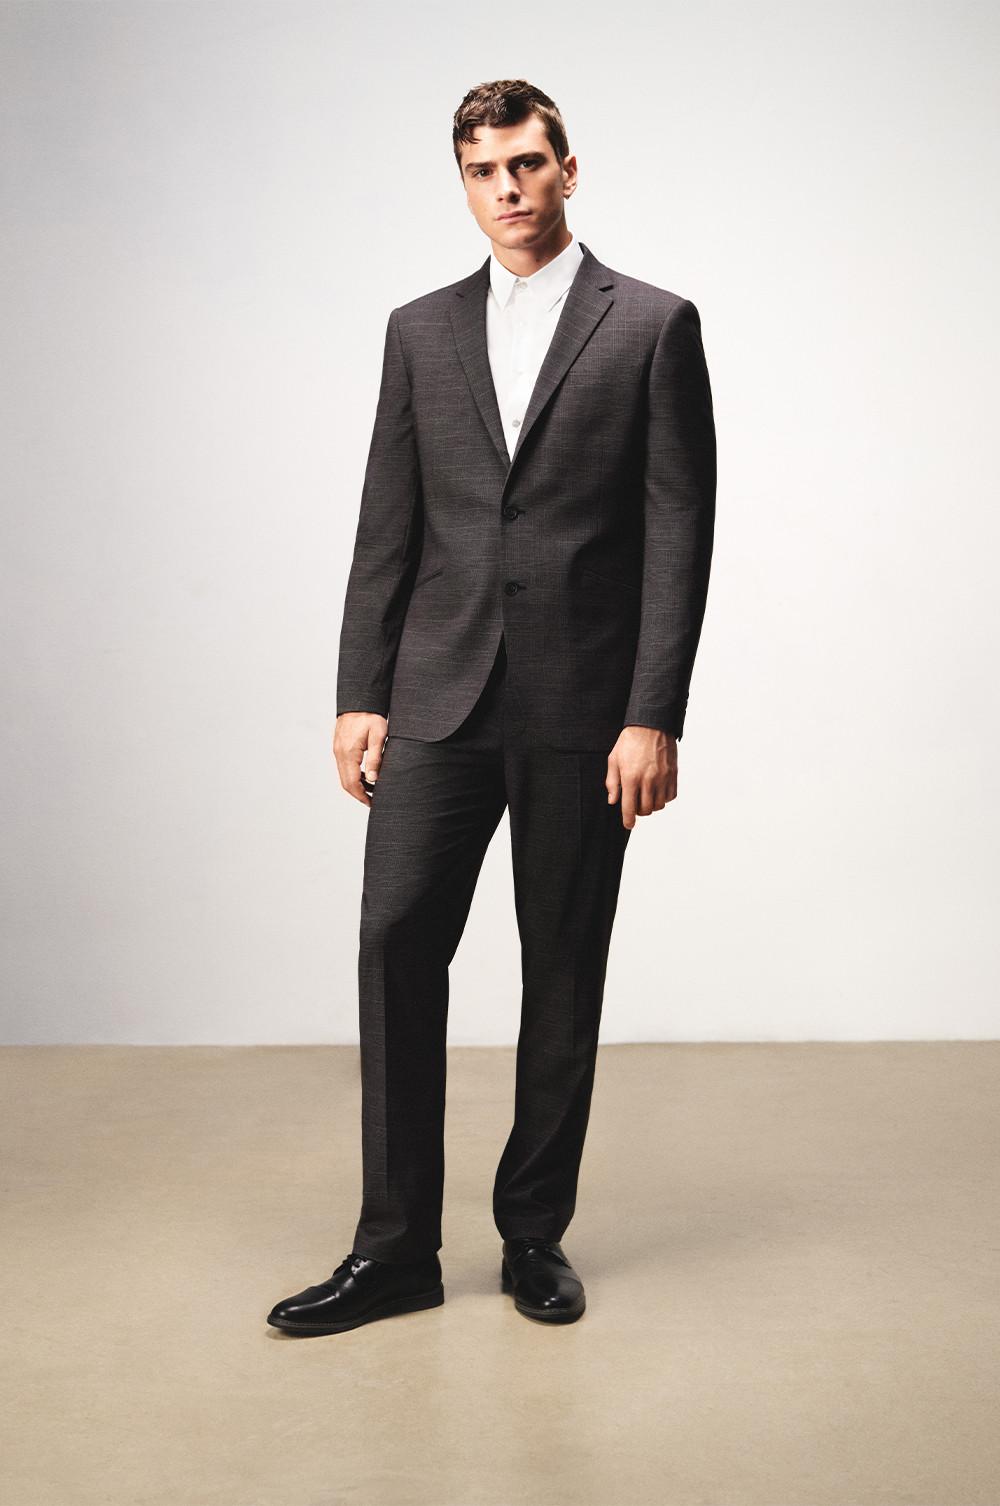 Prendas formales masculinas trajes, camisas y ropa de noche Primark